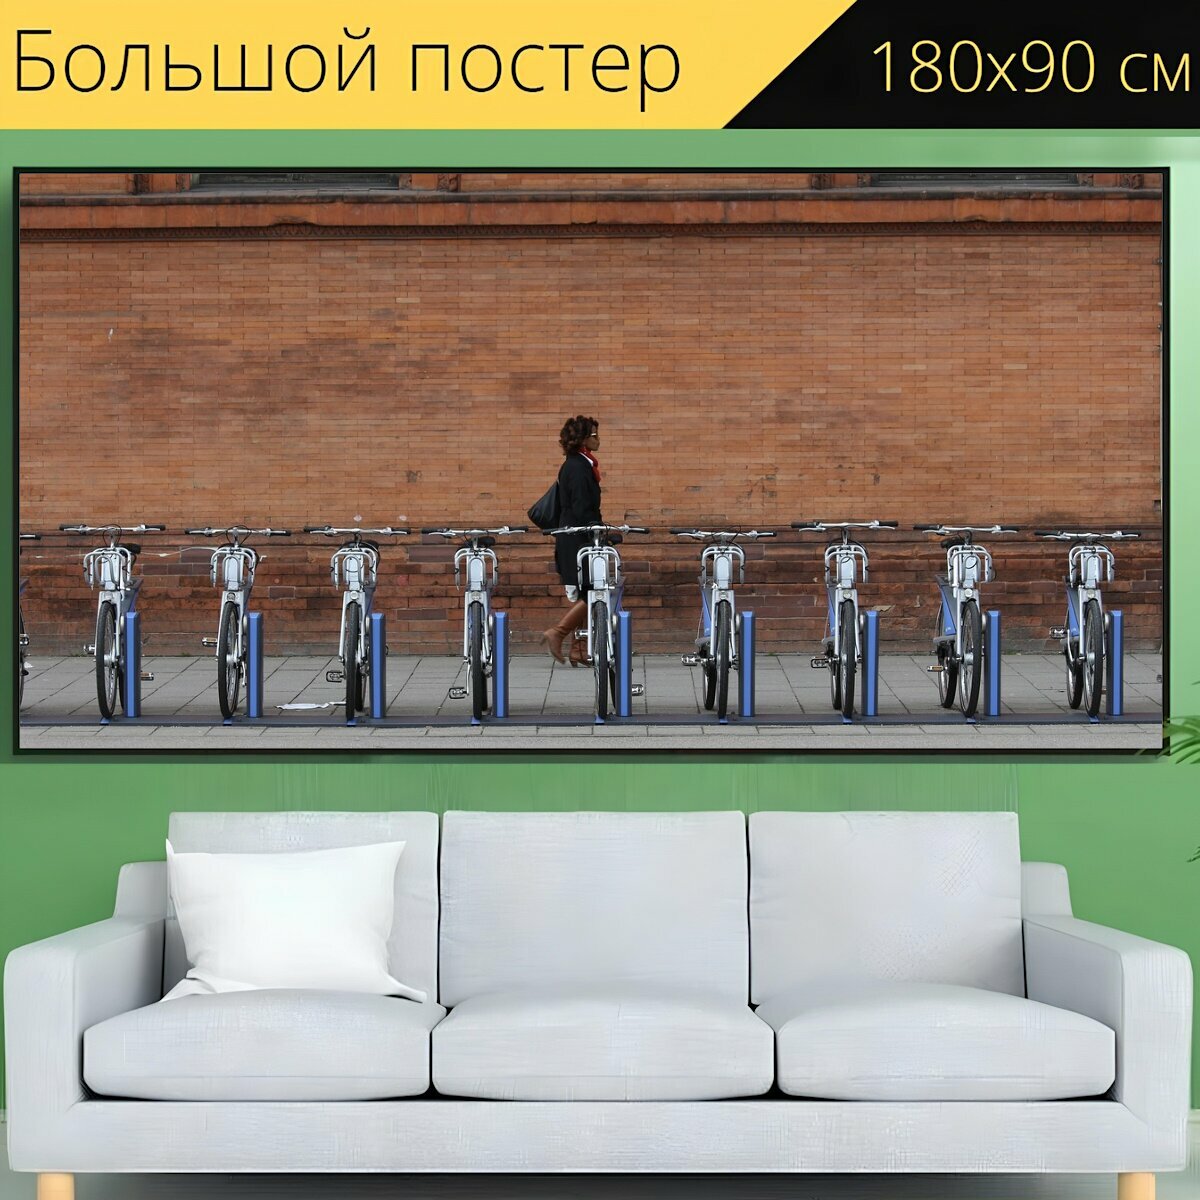 Большой постер "Велосипед, улица, минимализм" 180 x 90 см. для интерьера